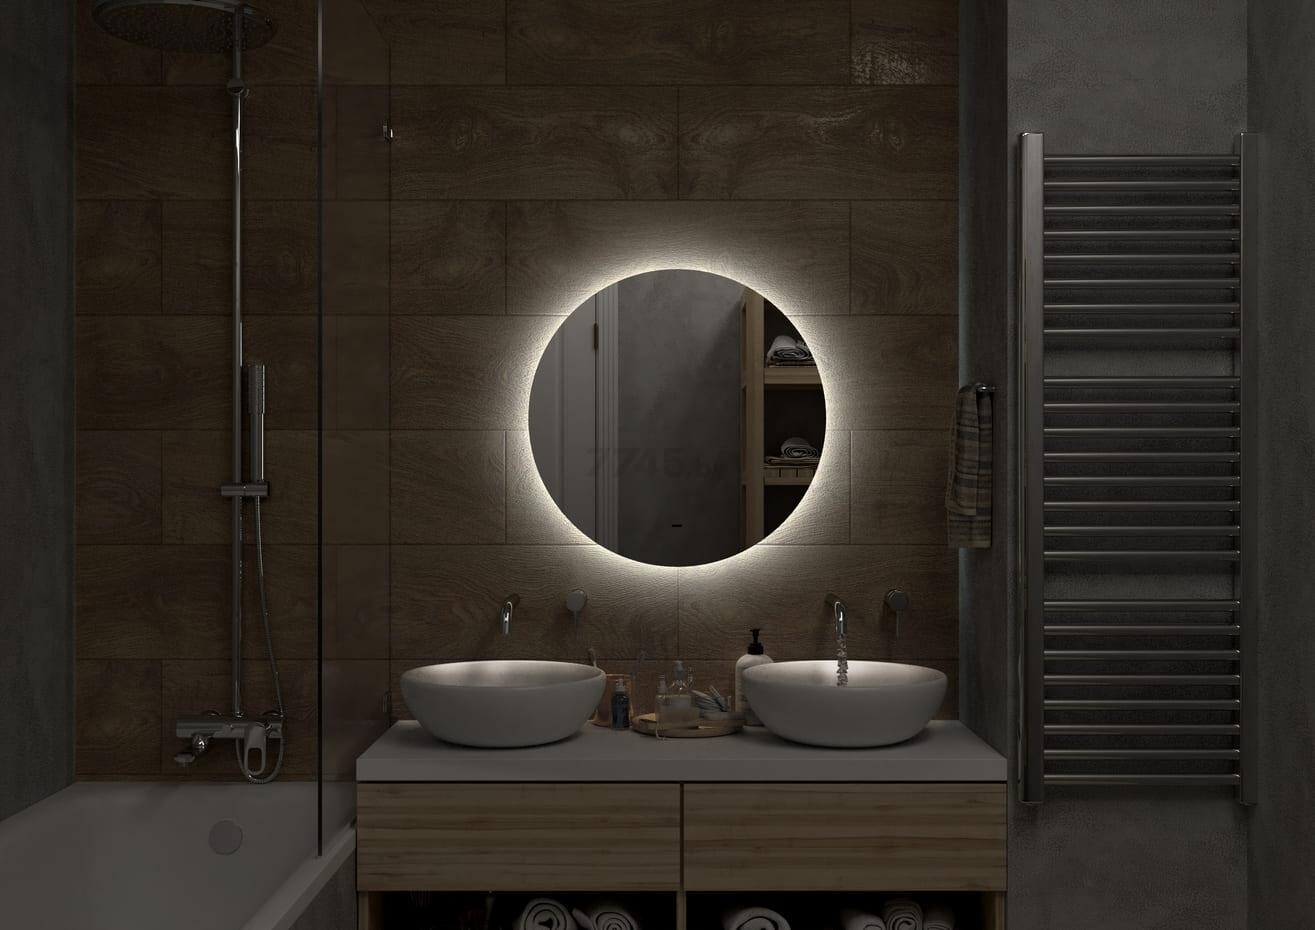 Зеркало для ванной с подсветкой КОНТИНЕНТ Ajour LED D550 ореольная теплая/холодная подсветка (ЗЛП2890) - Фото 12